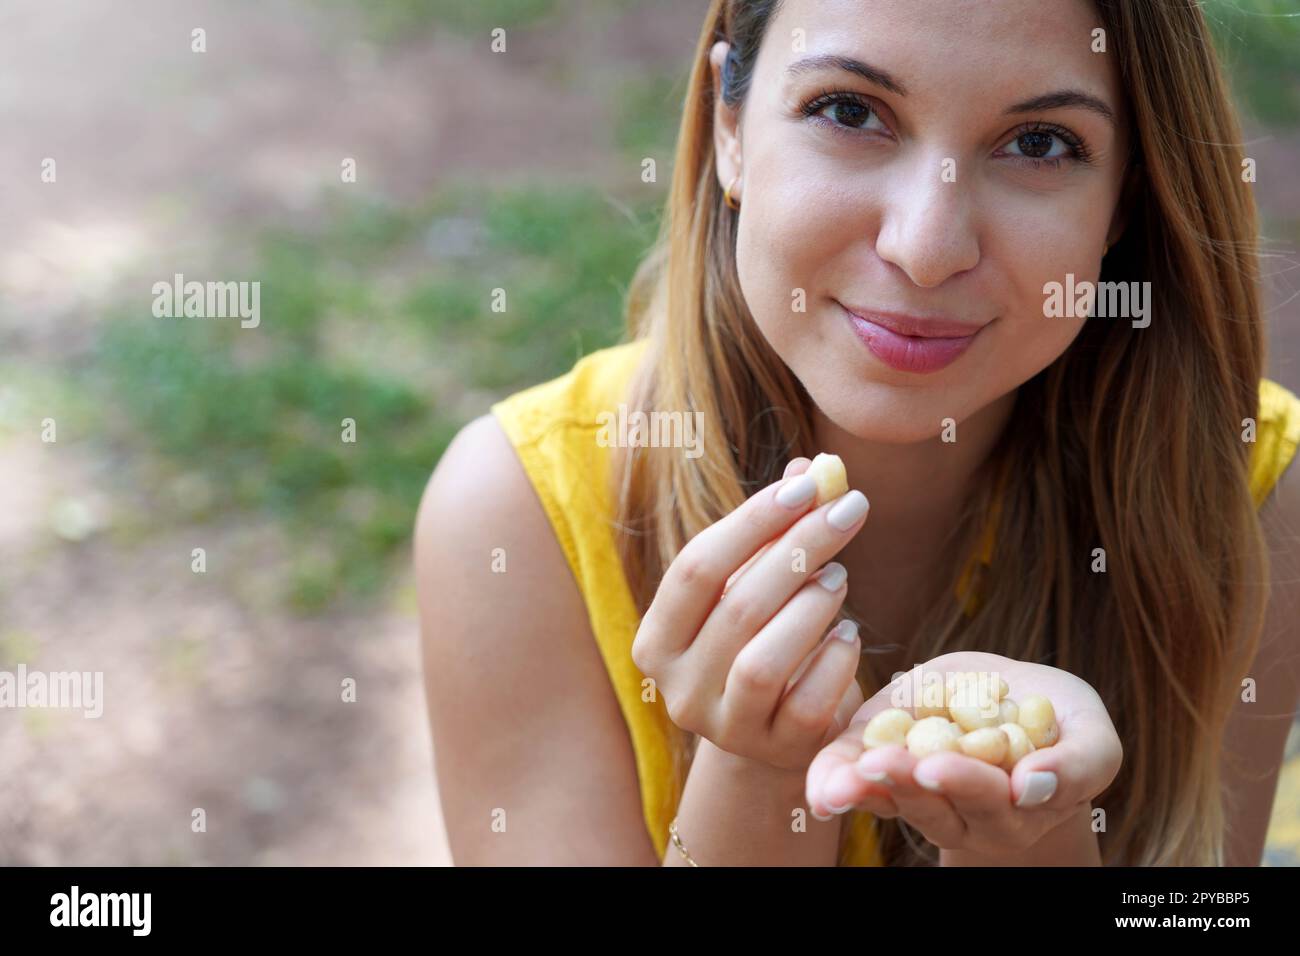 Une fille en bonne santé piquant des noix de macadamia de sa main dans le parc. Regarde la caméra. Banque D'Images